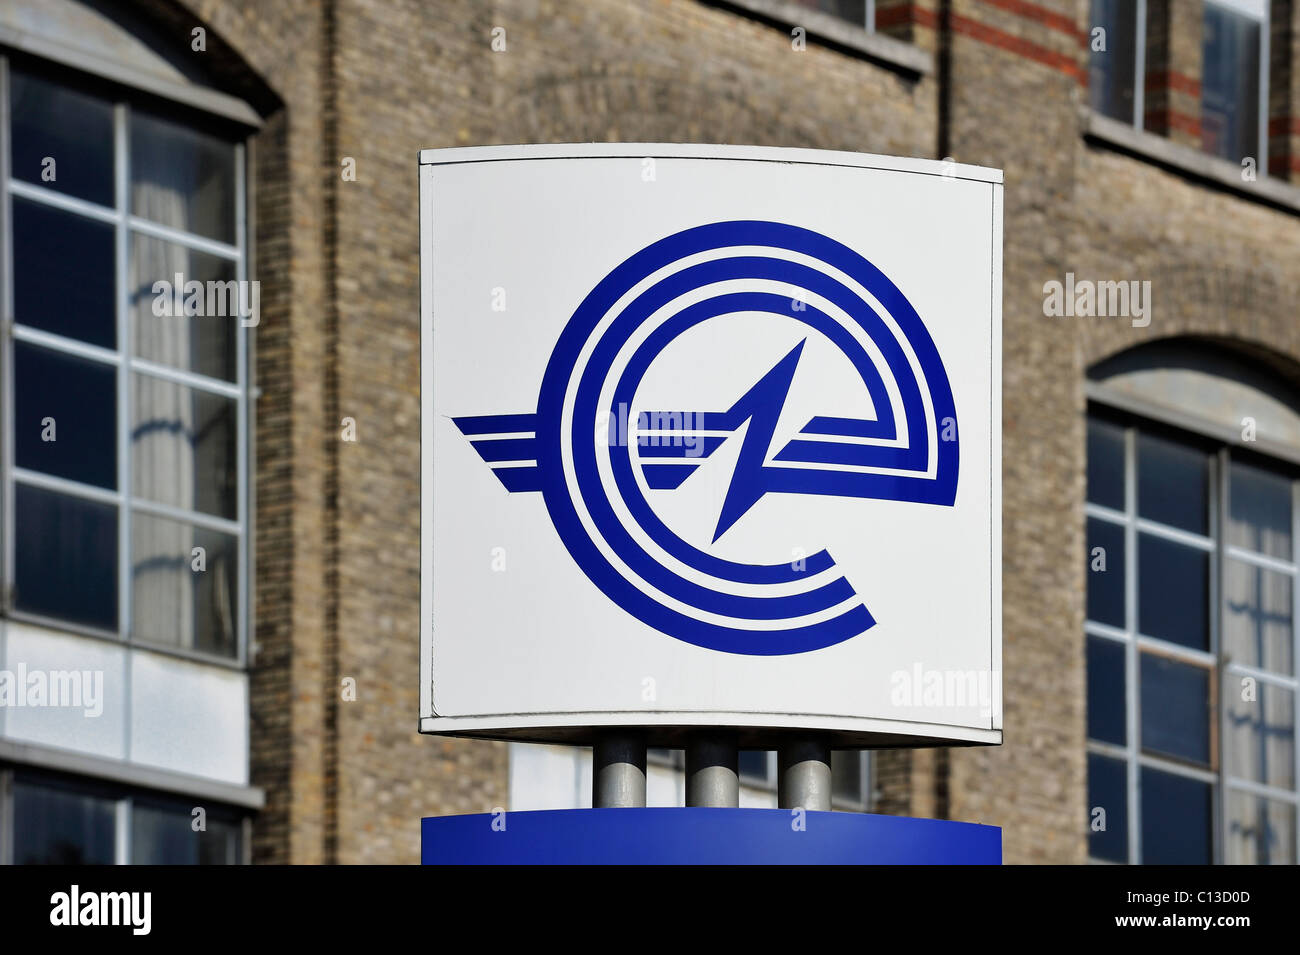 Cartello con il logo della energy corporation Electrabel, Gand, Belgio Foto Stock